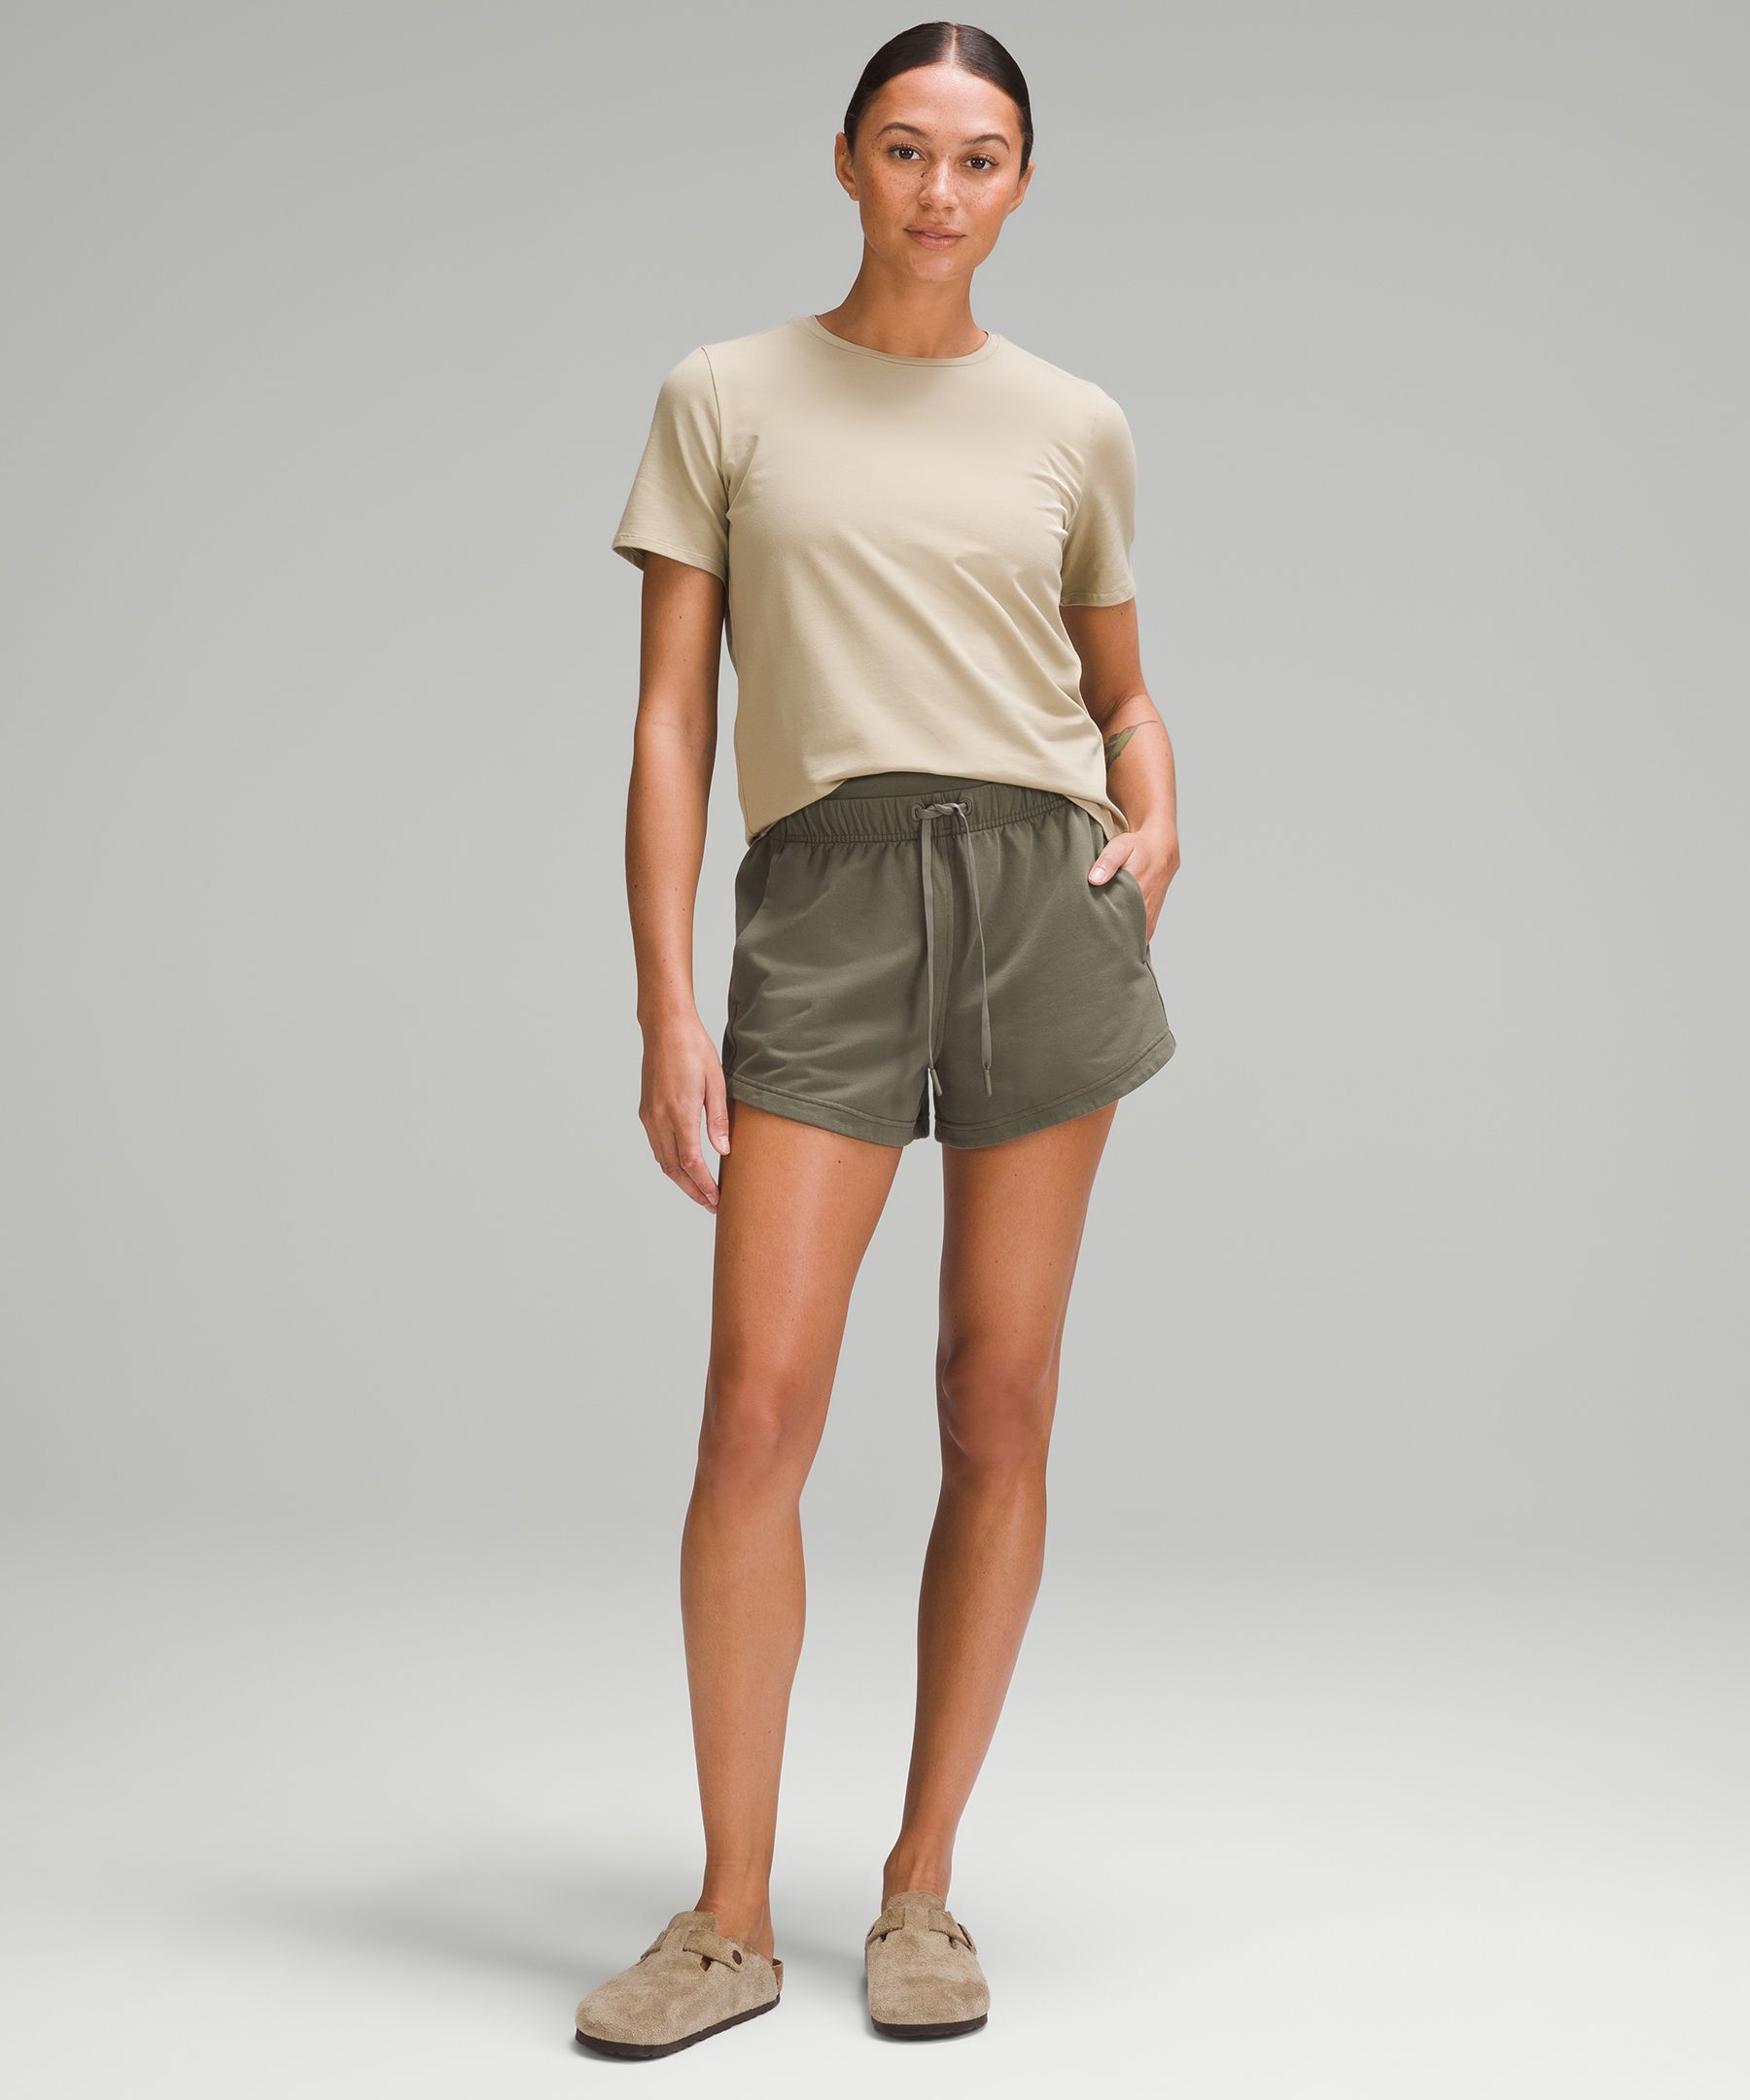 Lululemon athletica Loungeful High-Rise Short 4 *Graphic, Women's Shorts